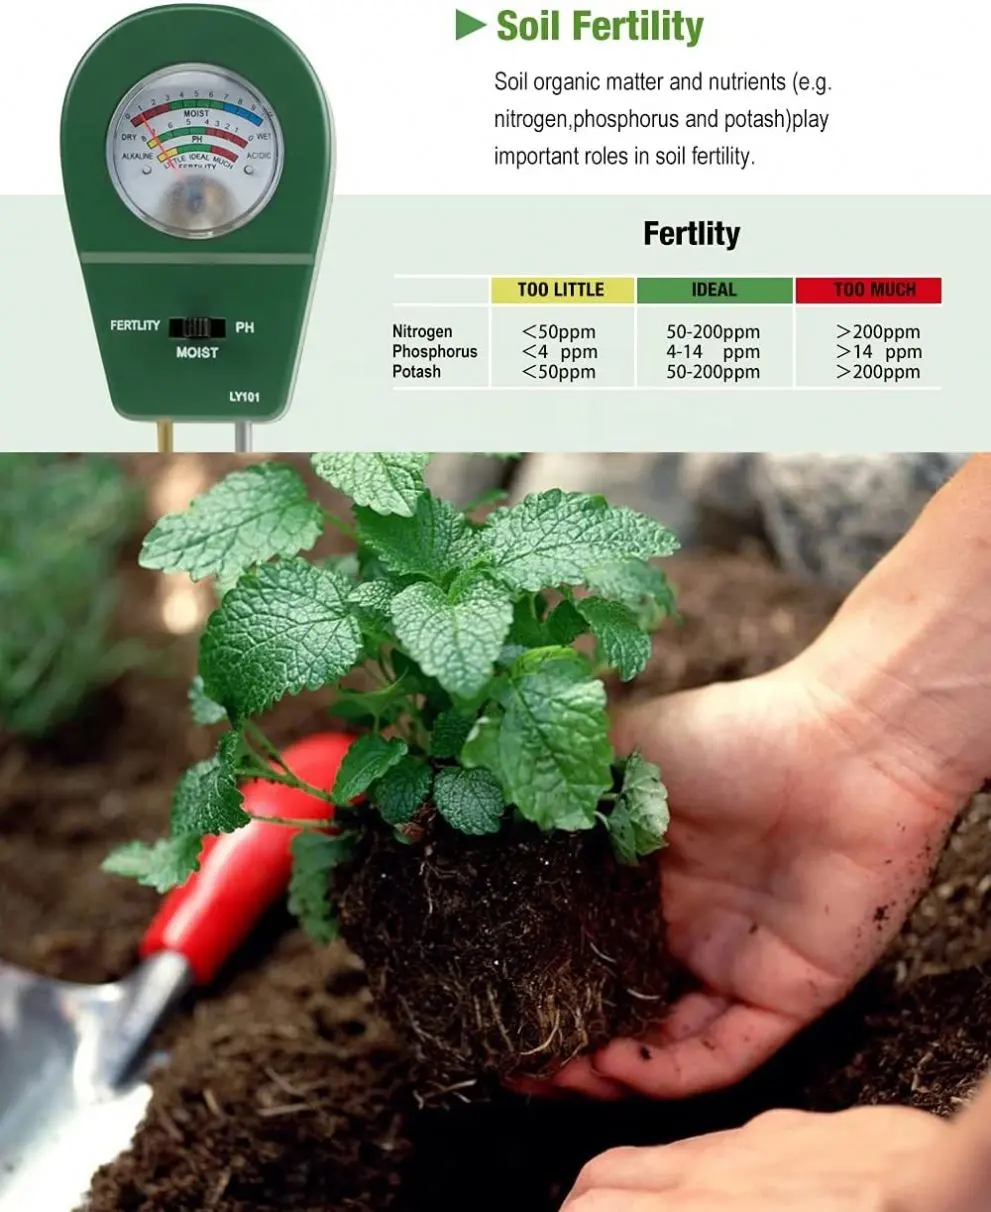 NEWEST Fertility Meter Gardening Tools 3 in 1 Soil PH Meter Fertility Tester Soil Fertility Meter Acidity Meter